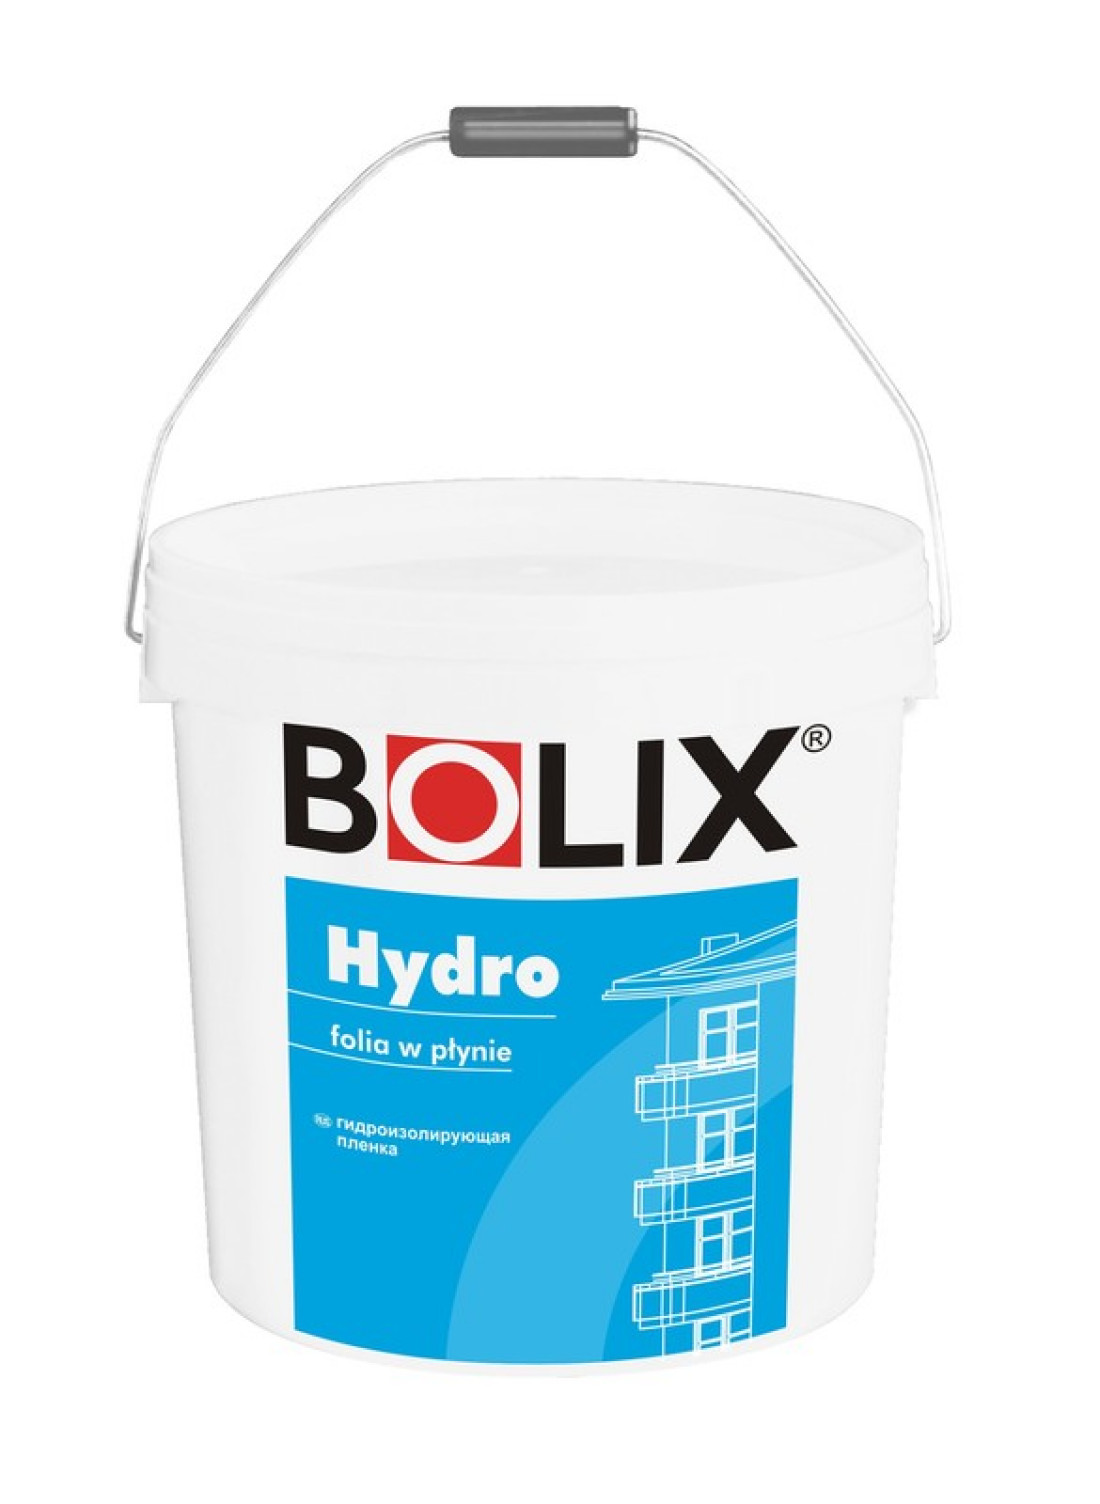 Bolix Hydro – izolacja w płynie